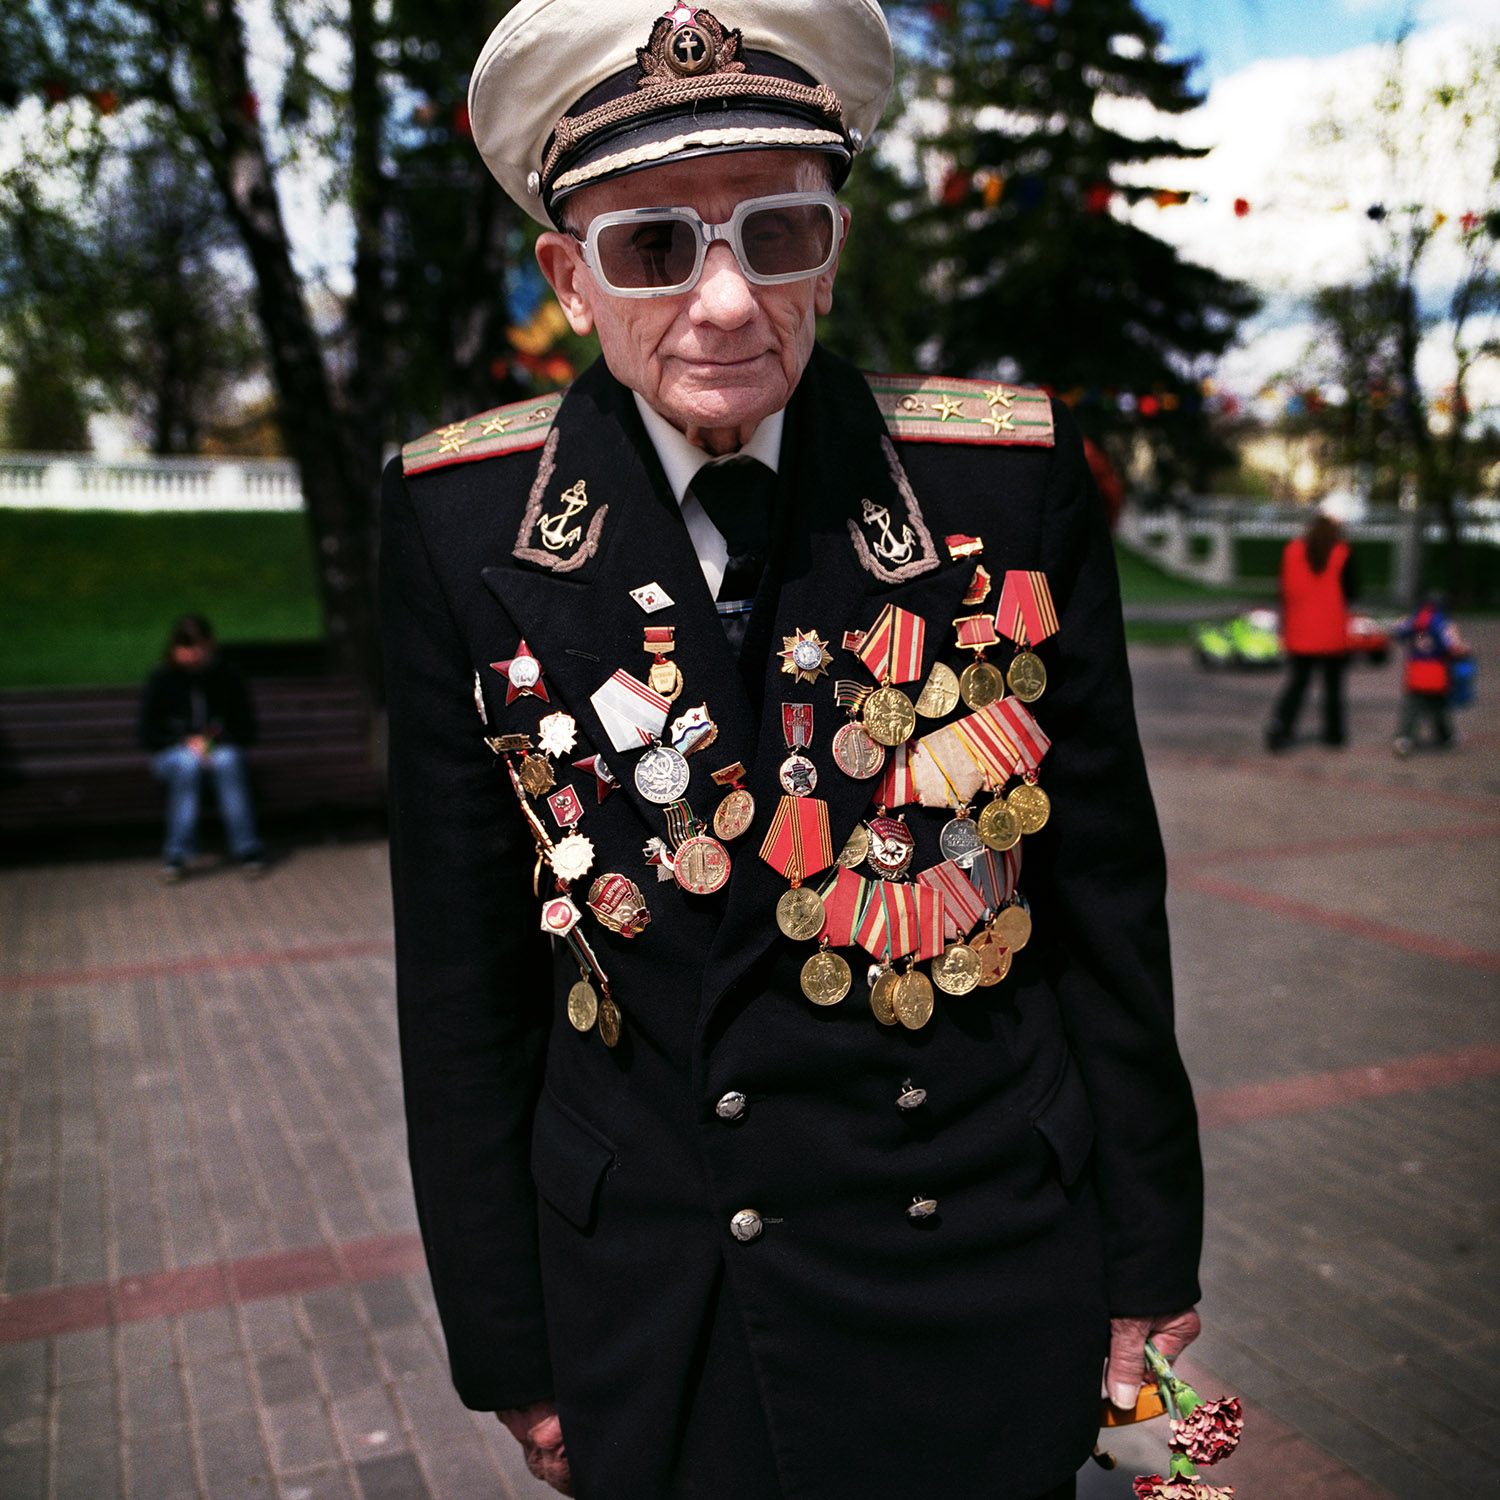   Flottans man Nikolaj Novikov Fjodorovitj träffade jag i Minsk 2004, den 9 maj då slutet på   andra världskriget firas, eller Det stora fosterländska kriget som det heter där. En veteran en bra bit över 90 år och pigg på att porträtteras med sina me